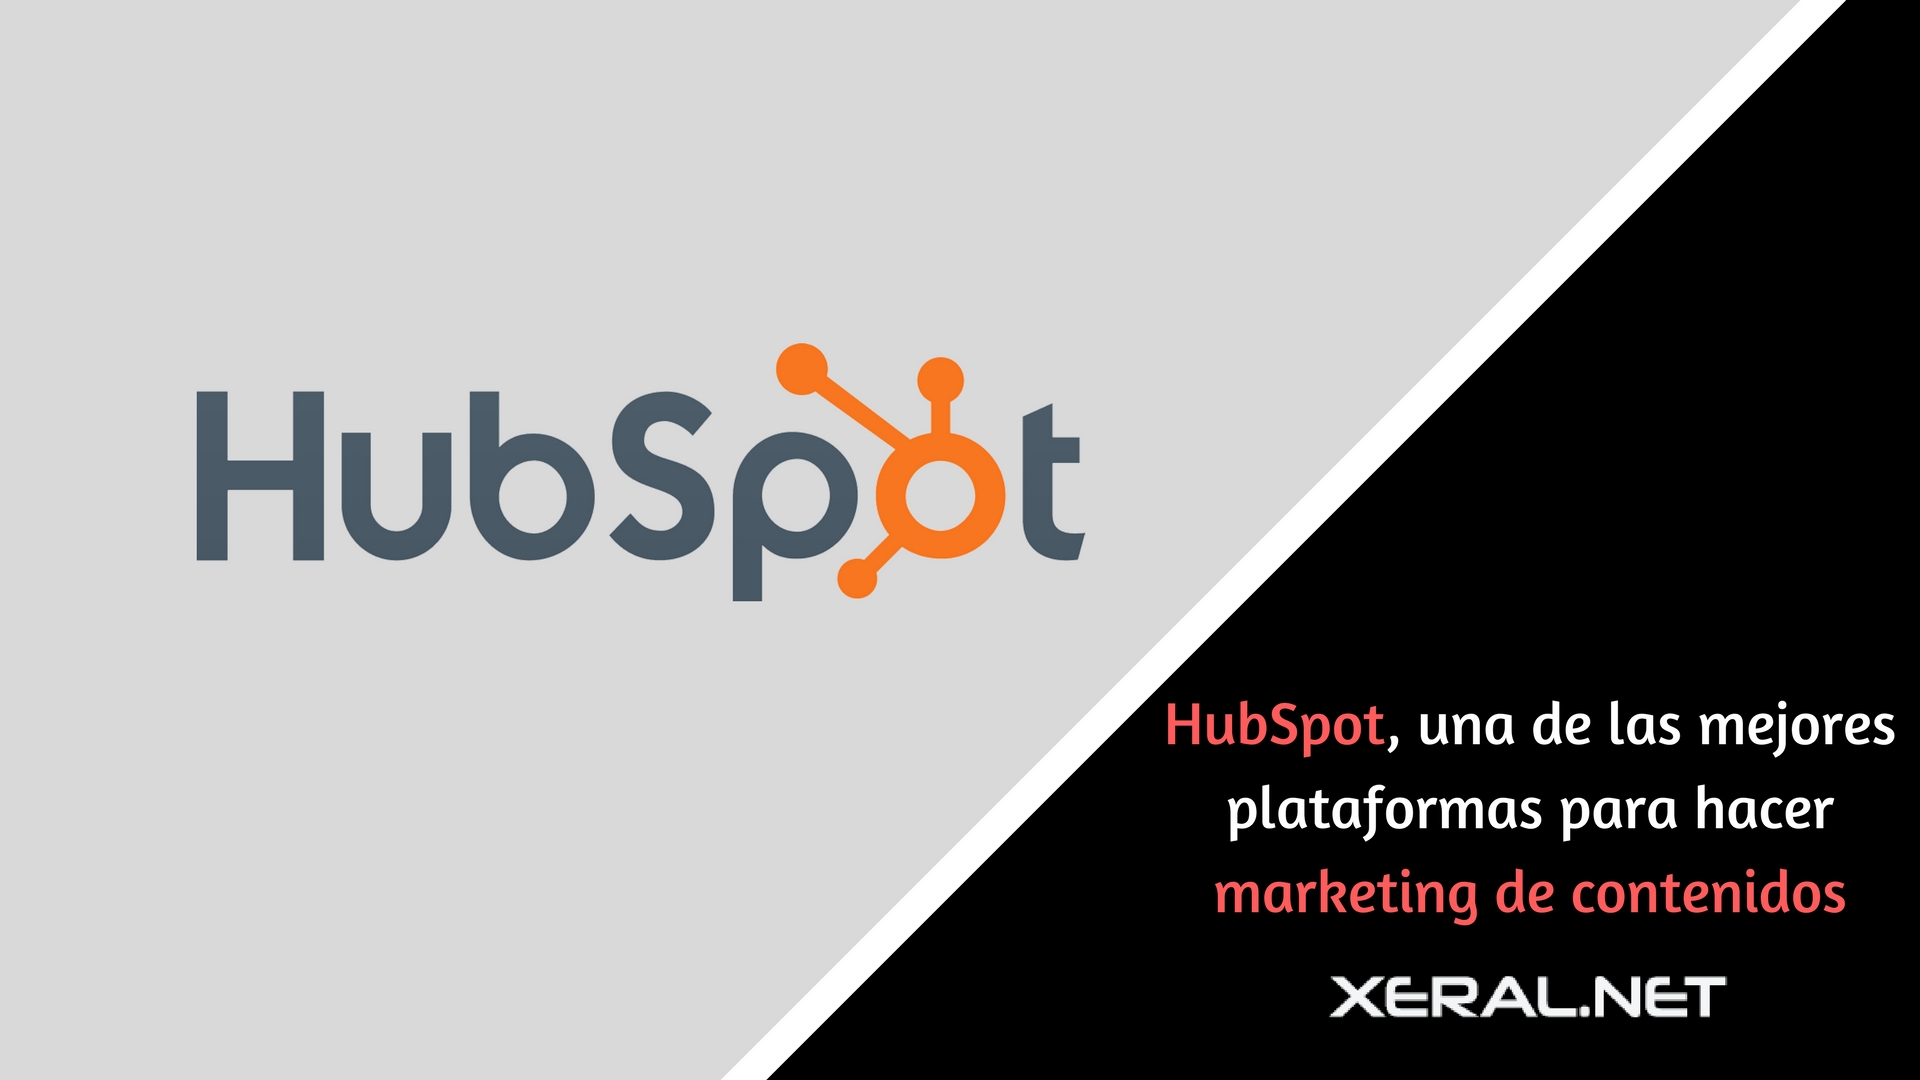 HubSpot, una de las mejores plataformas para hacer marketing de contenidos